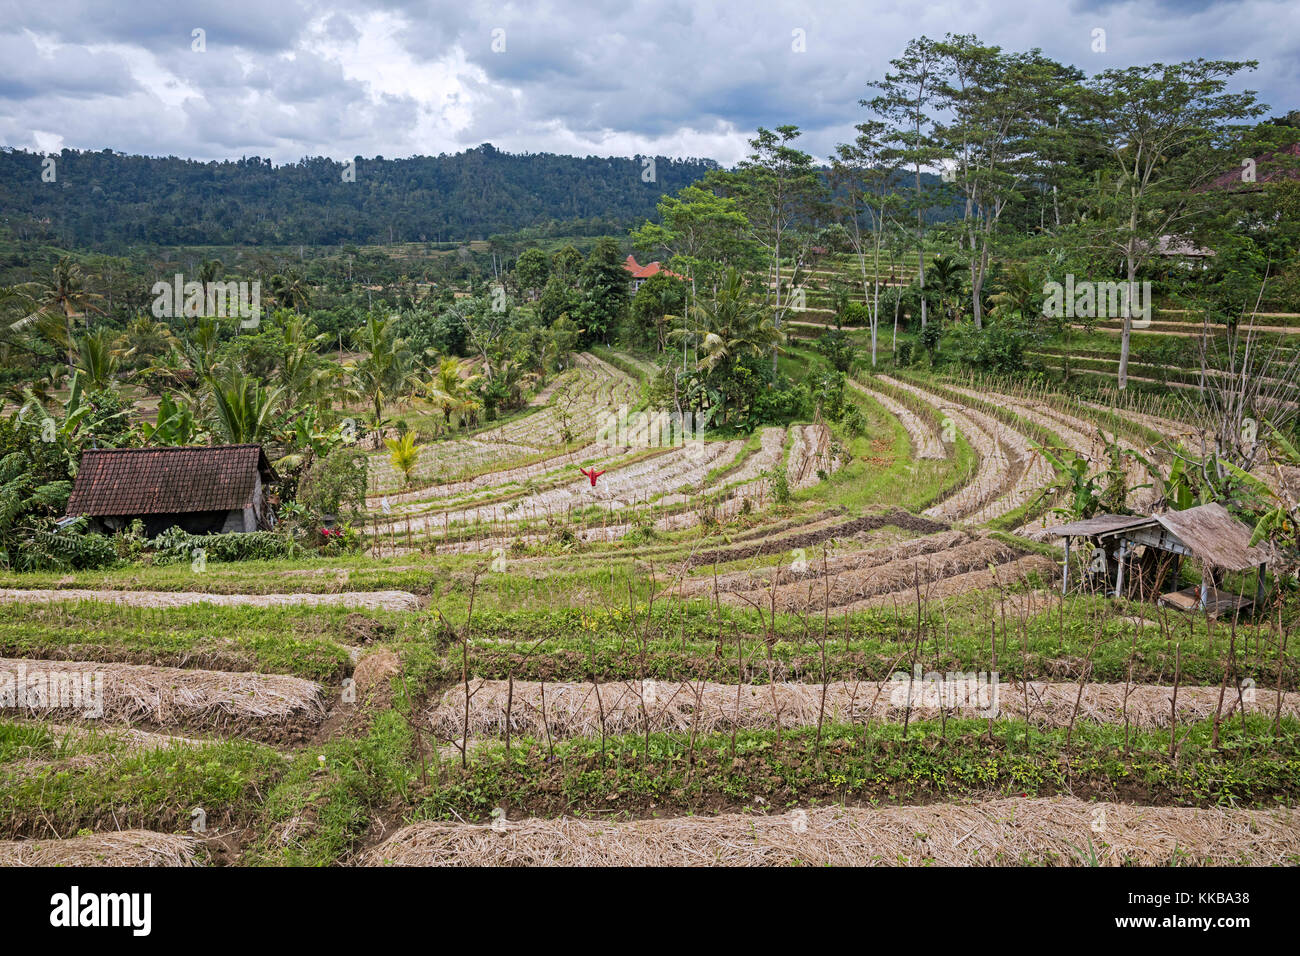 A Schiera campi di fagiolo / terrazze nel villaggio rurale sideman nel karangasem regency, Bali, Indonesia Foto Stock